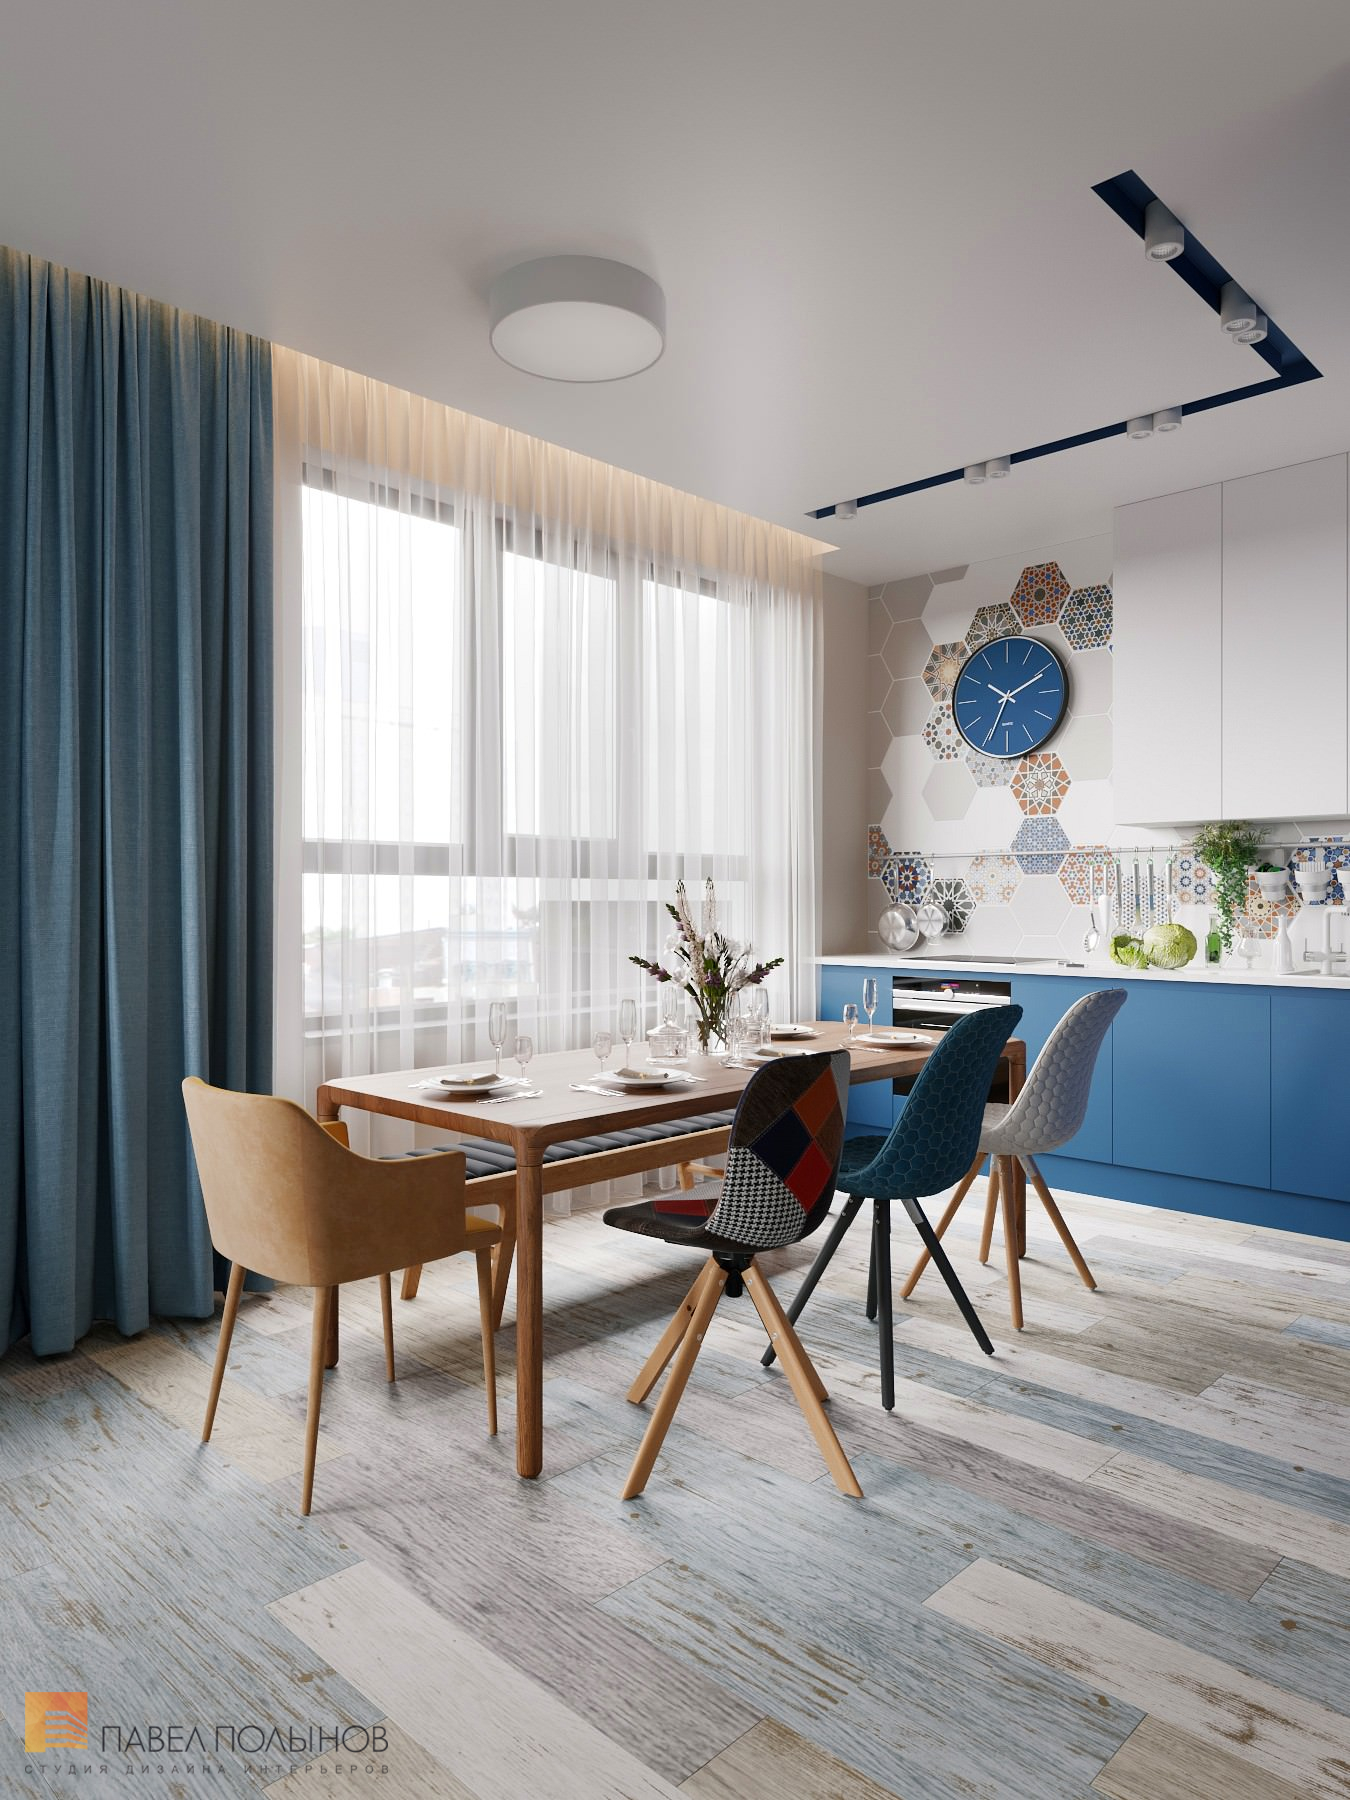 Фото дизайн кухни-гостиной из проекта «Интерьер квартиры в скандинавском стиле, ЖК «Silver», 146 кв.м.»